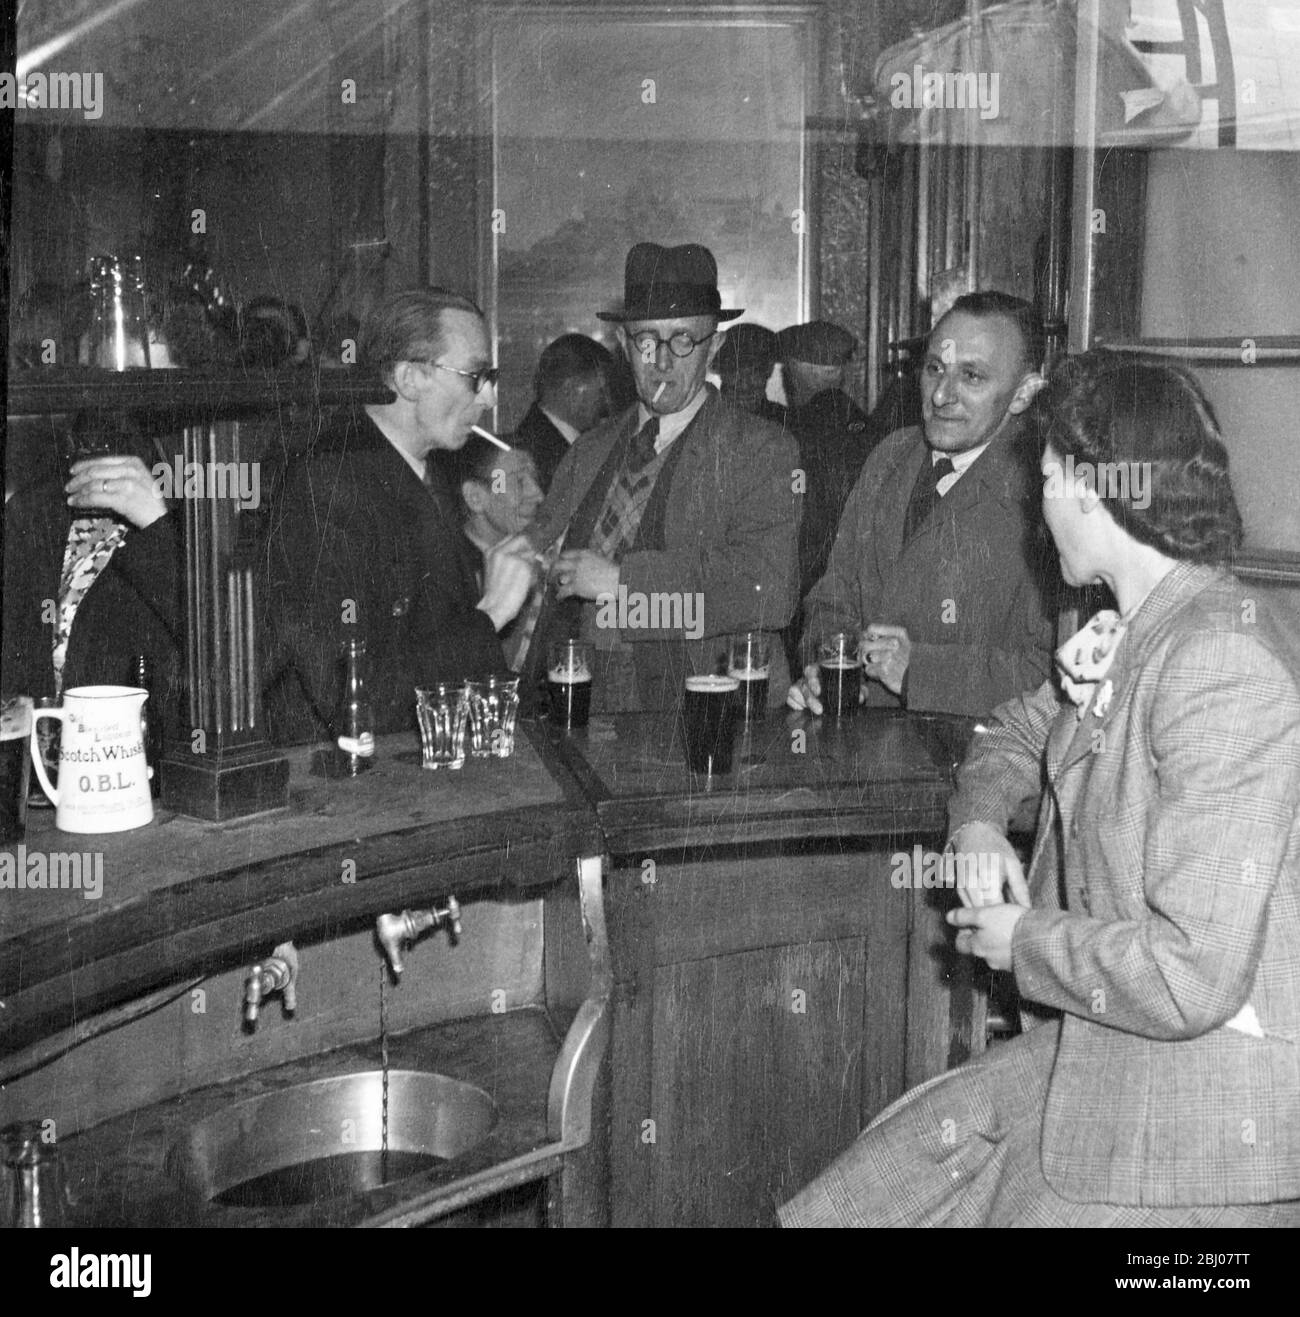 Gli uomini che bevono e fumano in un bar con una barman che li aspetta. - - [nessuna didascalia, luogo o data] Foto Stock